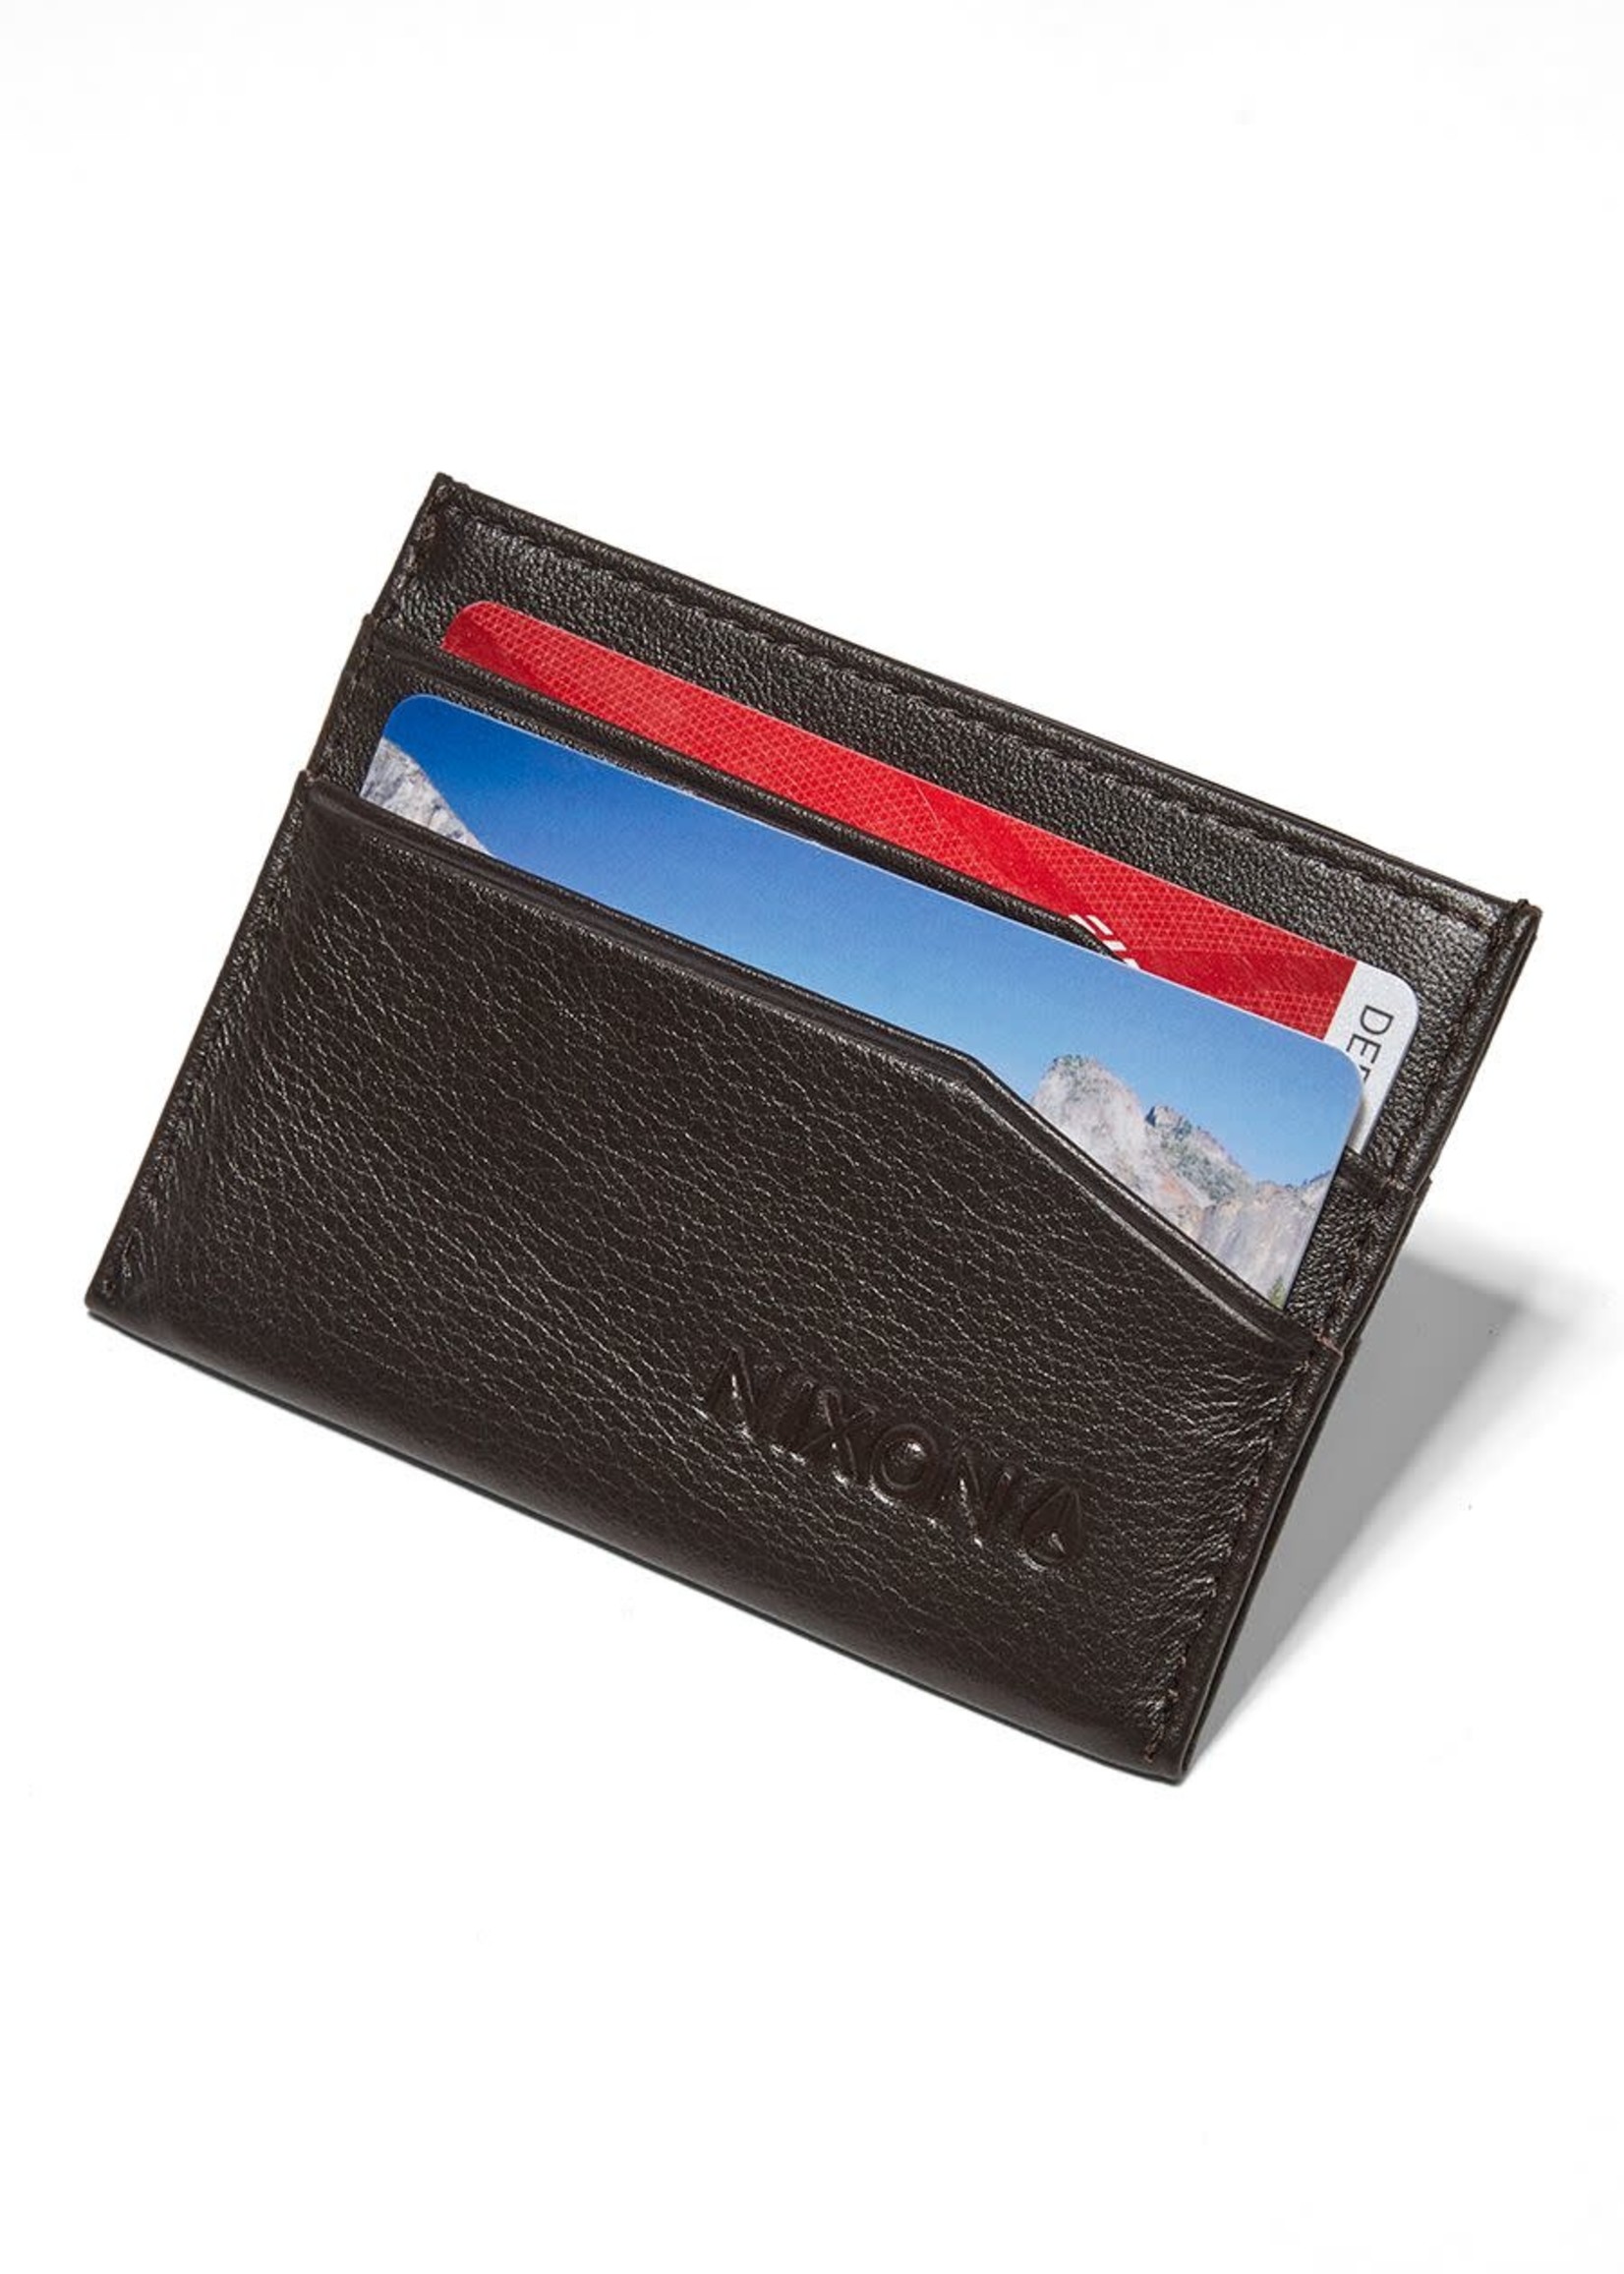 NIXON Flaco Leather Card Wallet, DK BROWN